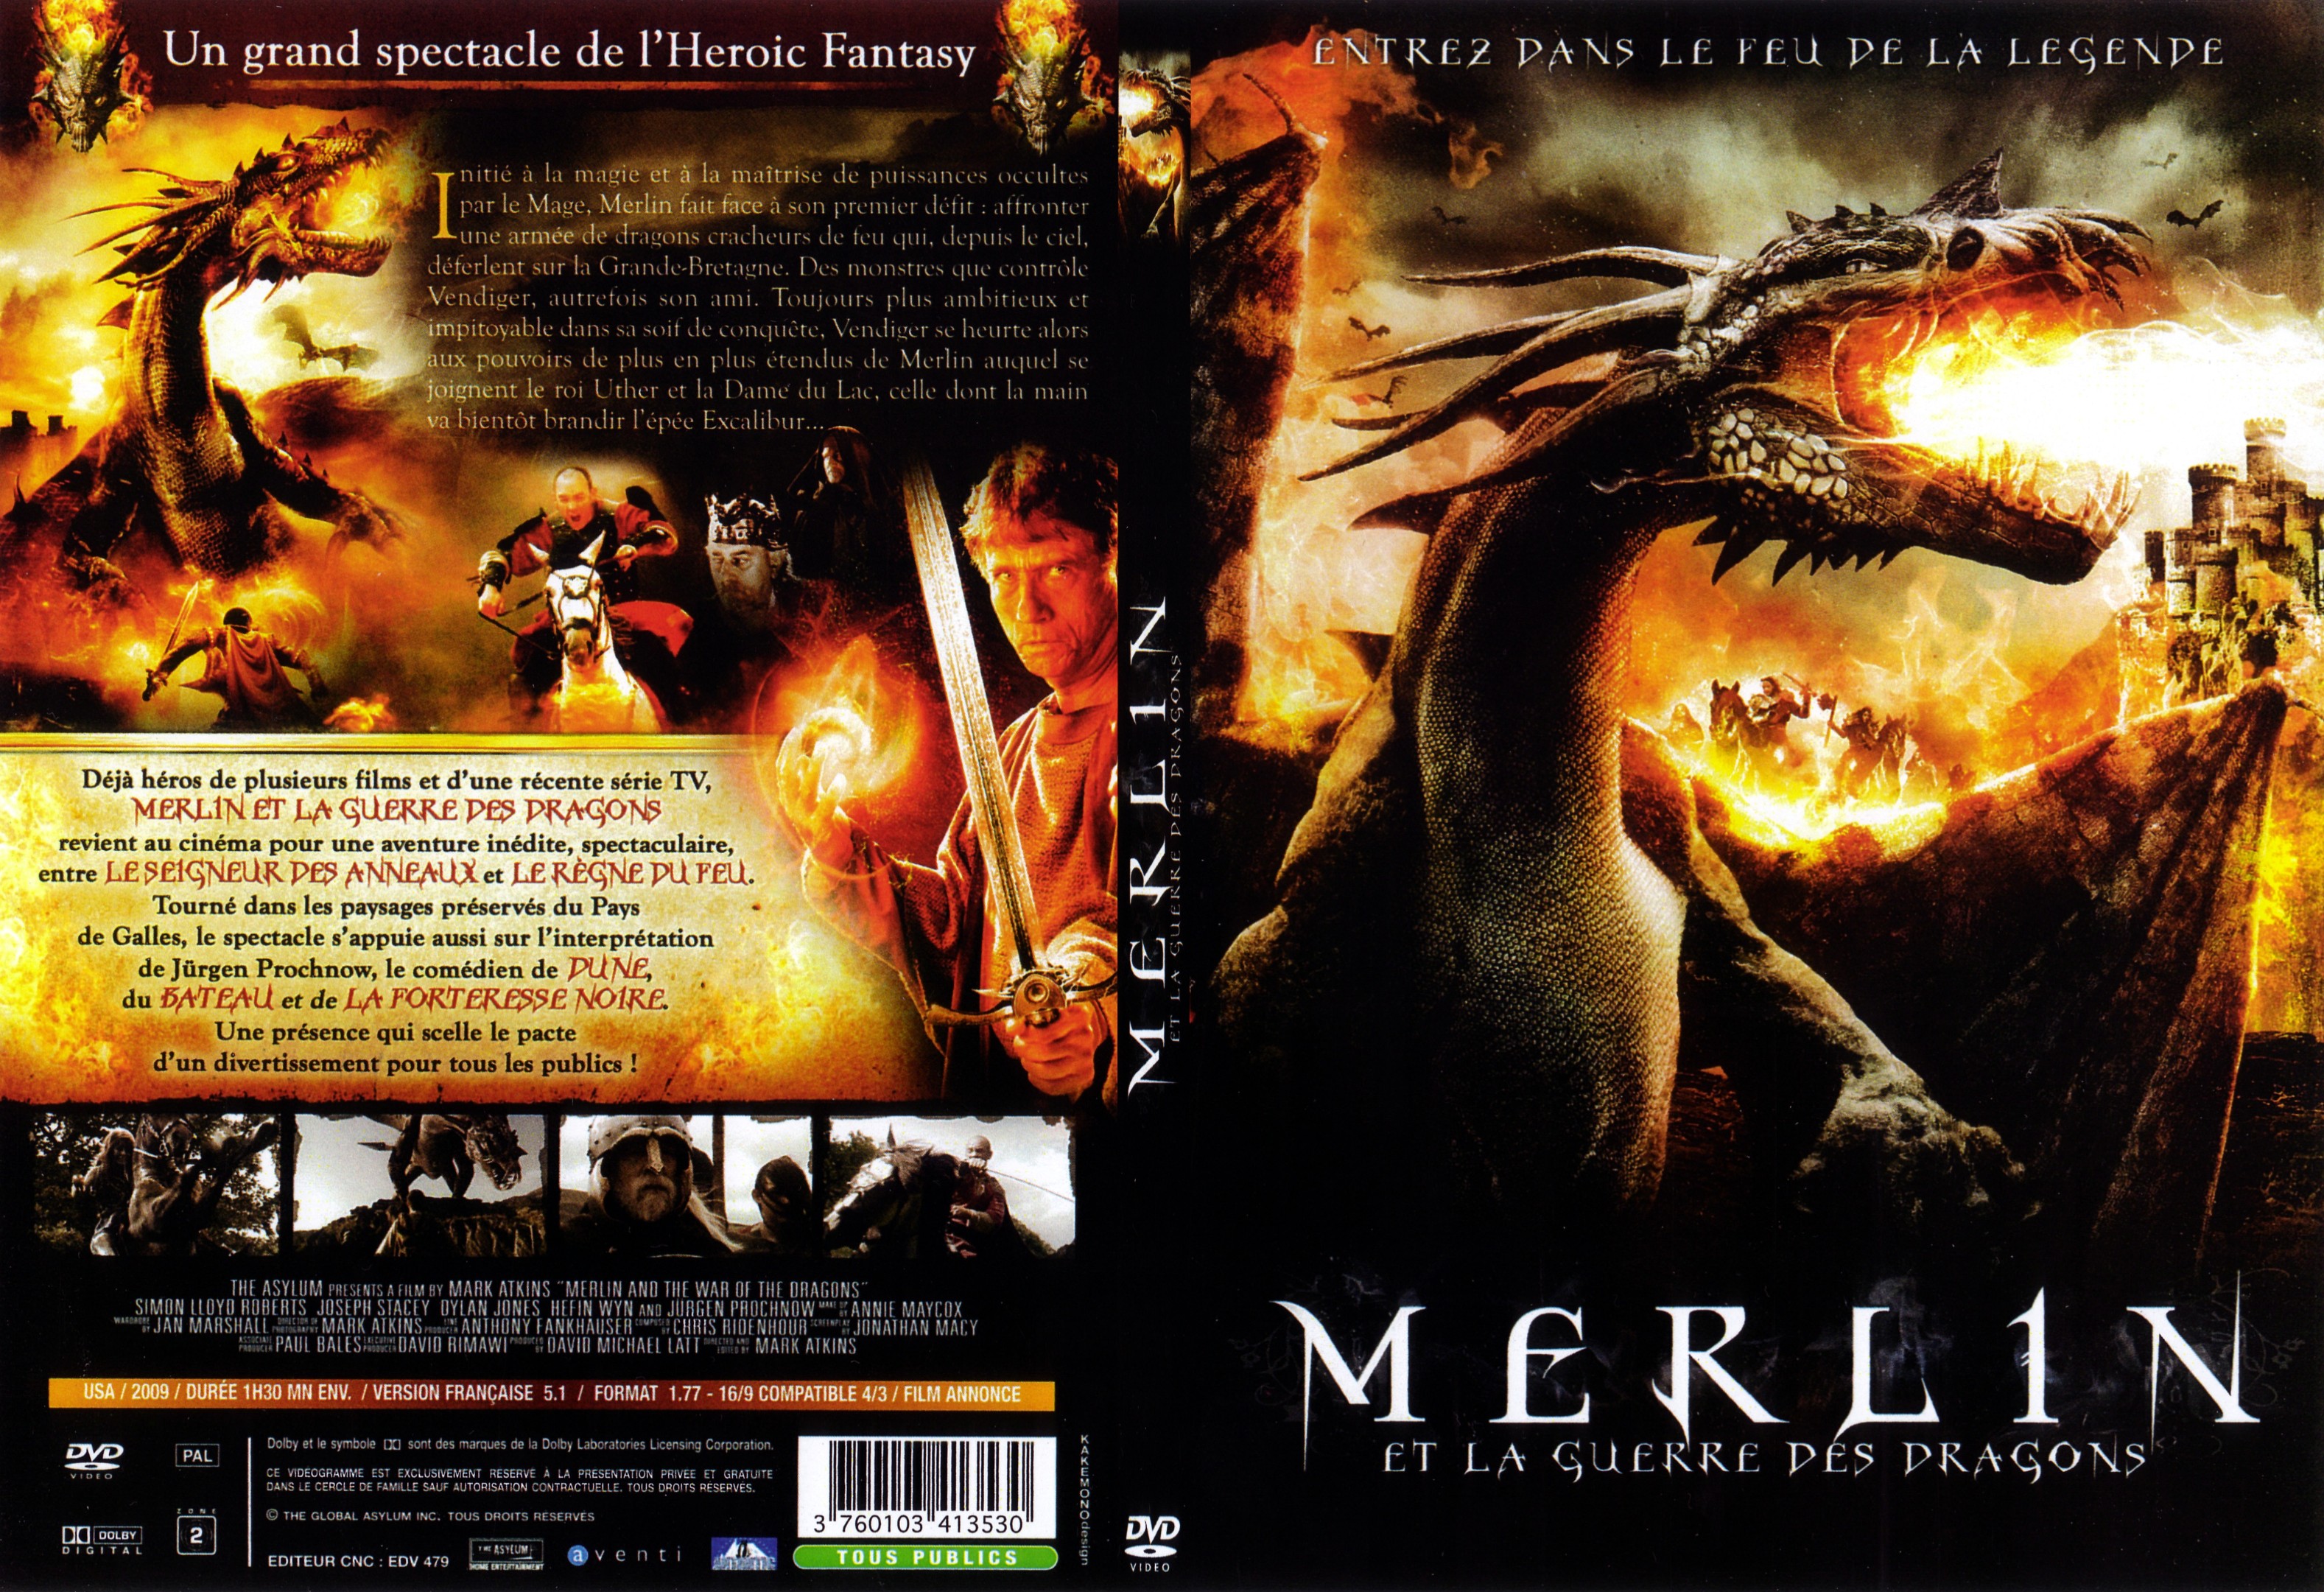 Jaquette DVD Merlin et la guerre des dragons - SLIM